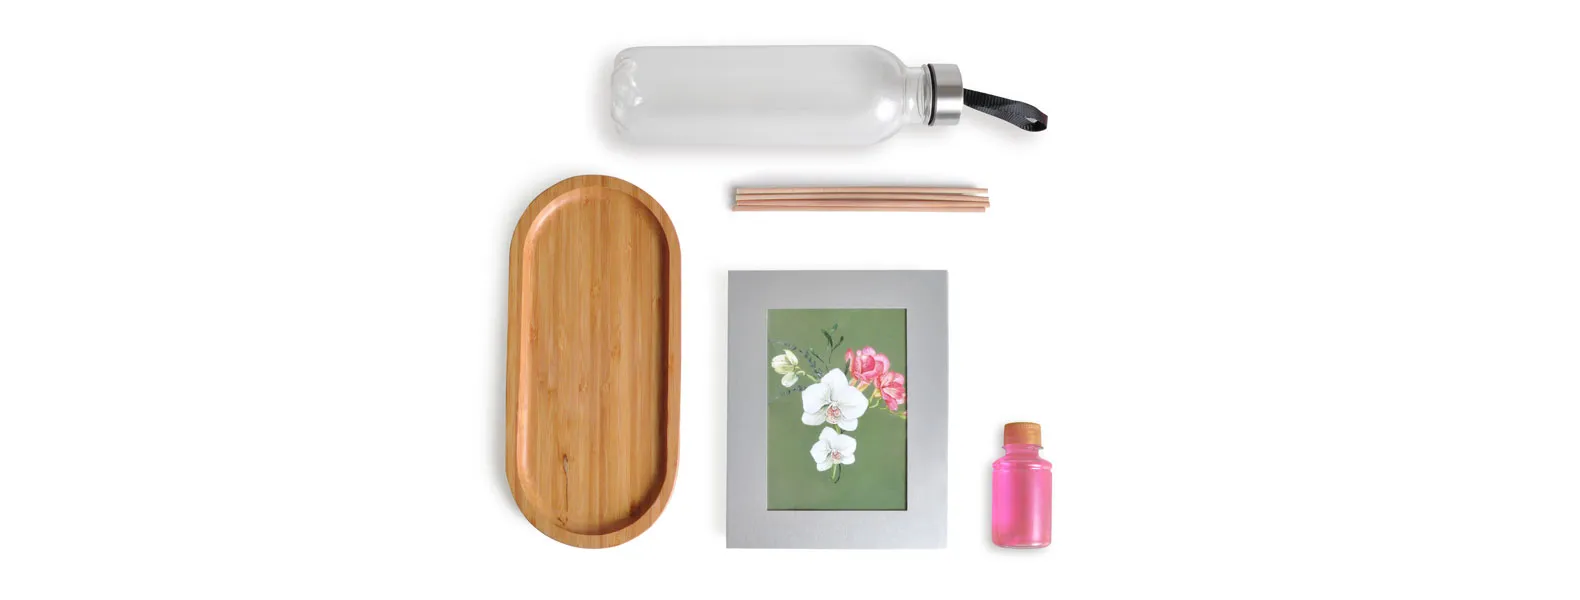 Kit bandeja, aromatizador e acessórios. Composto por bandeja oval em bambu; garrafa transparente em PET; porta-retrato em alumínio; aromatizador de ambiente com fragrância de orquídea.